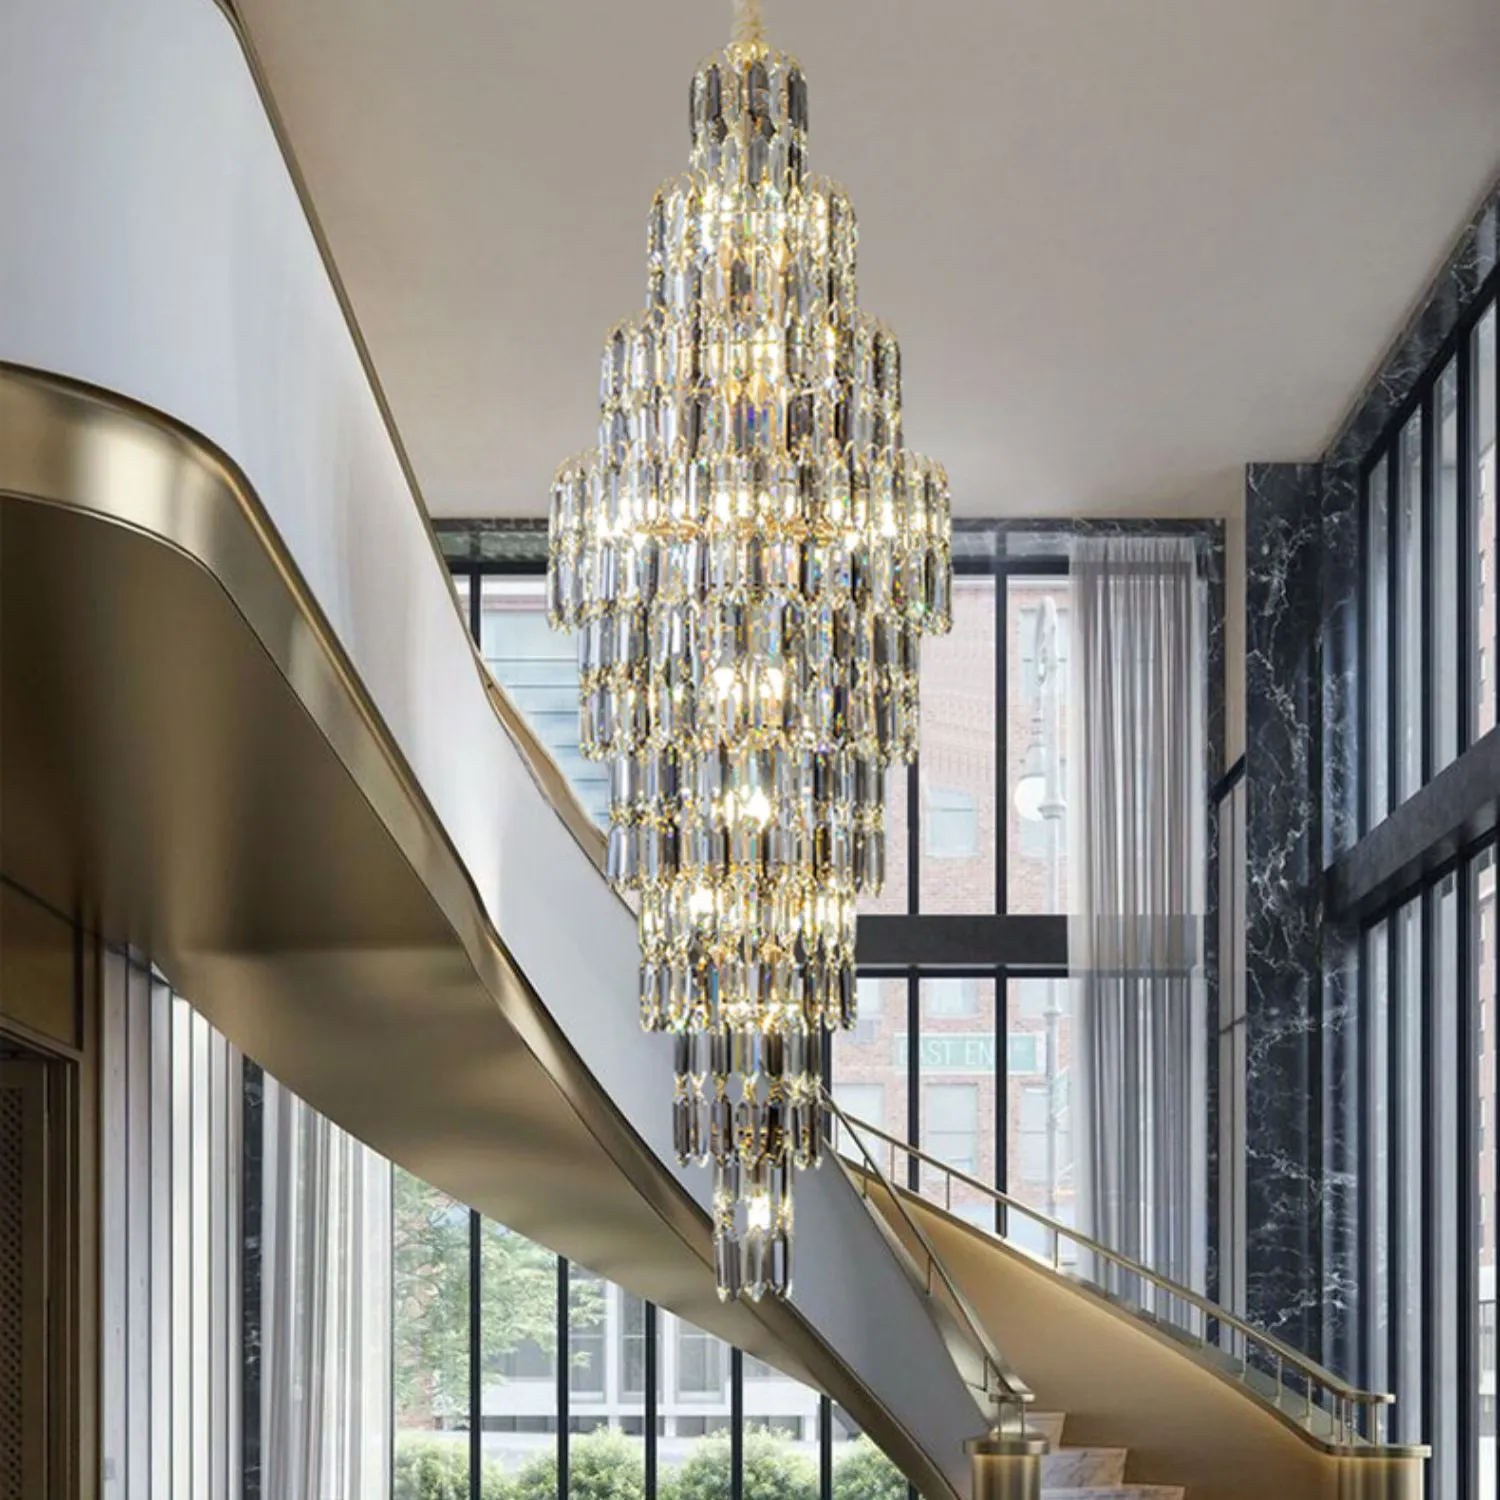 Candelabro de cristal moderno Langju para escalera, vestíbulo de lujo, accesorio de luz colgante largo, decoración grande para el hogar, lámpara de Cristal Led dorada